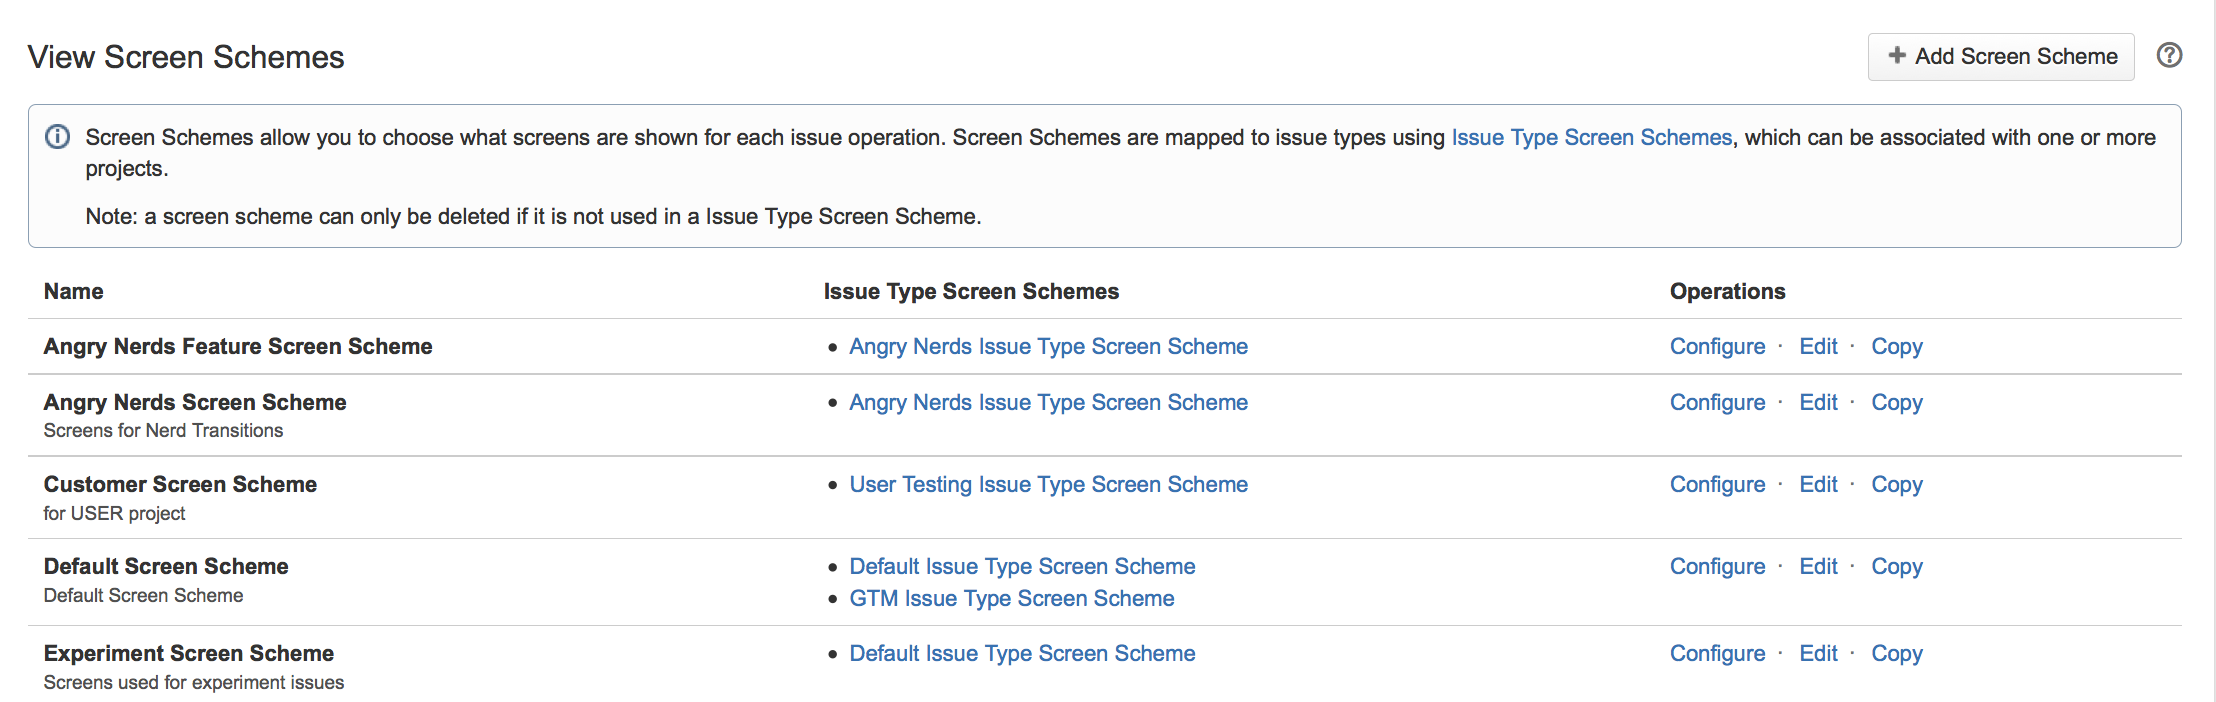 List of screen schemes.